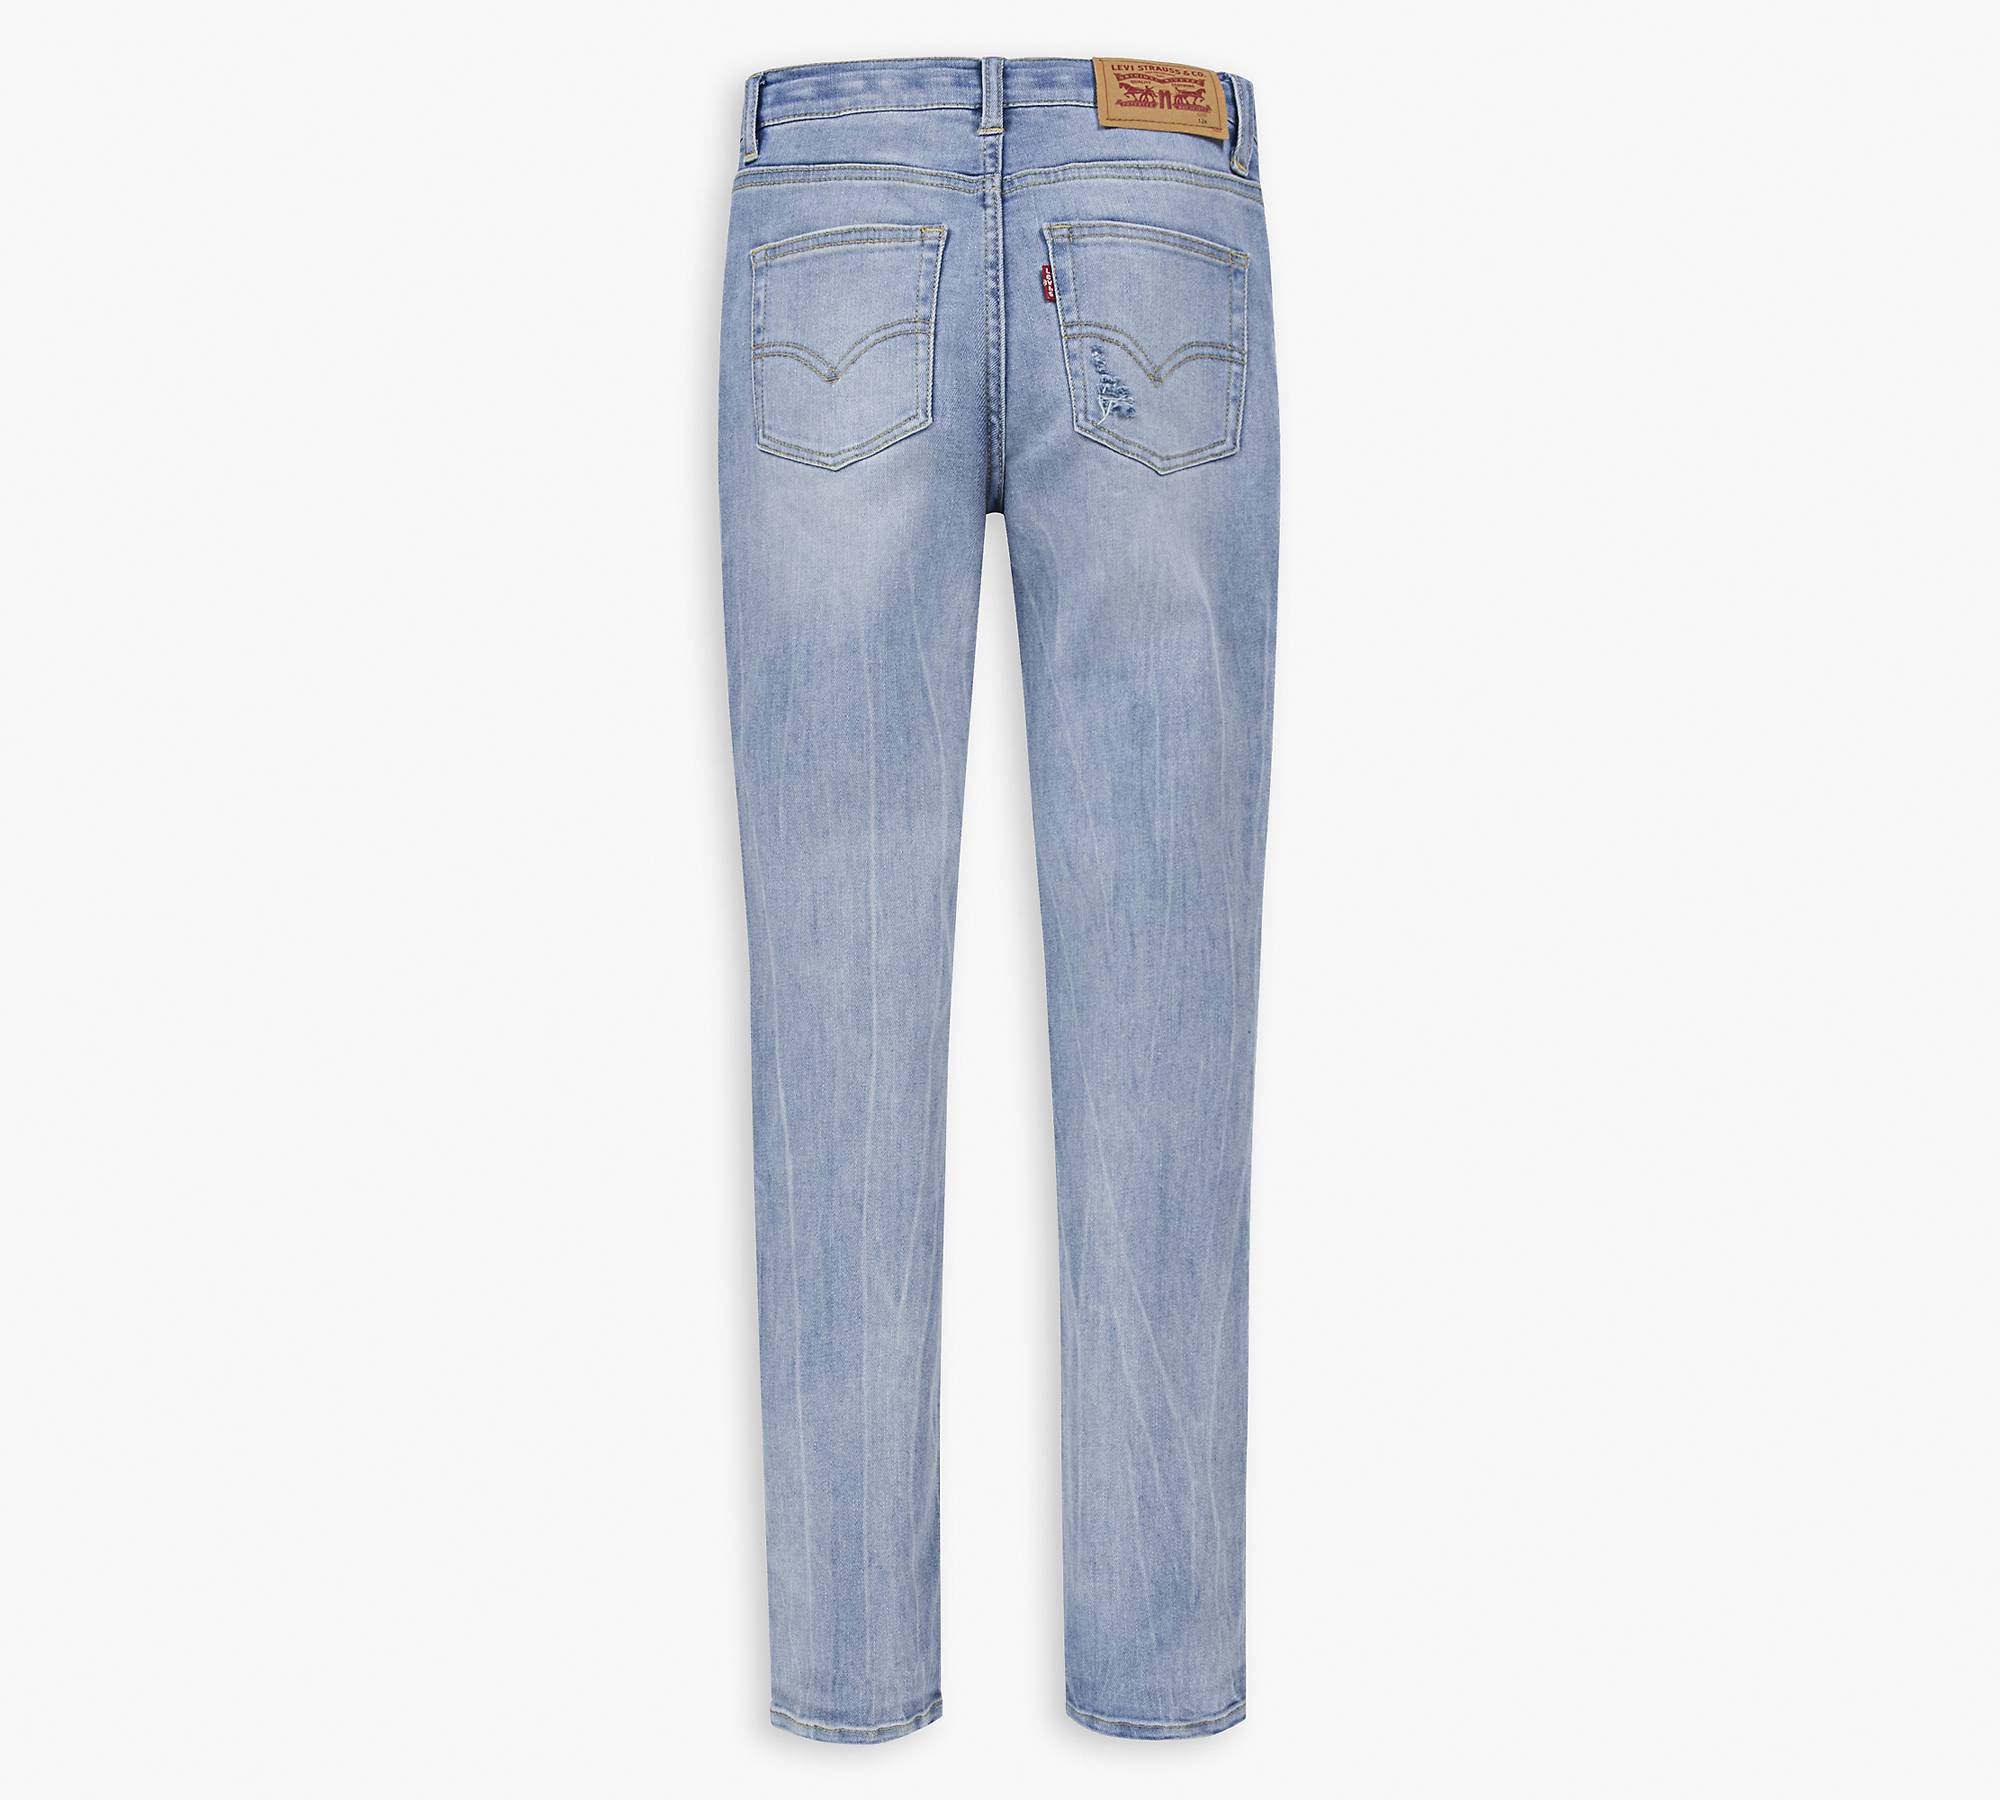 Skinny Taper Fit Big Boys Jeans 8-20 - Light Wash | Levi's® US